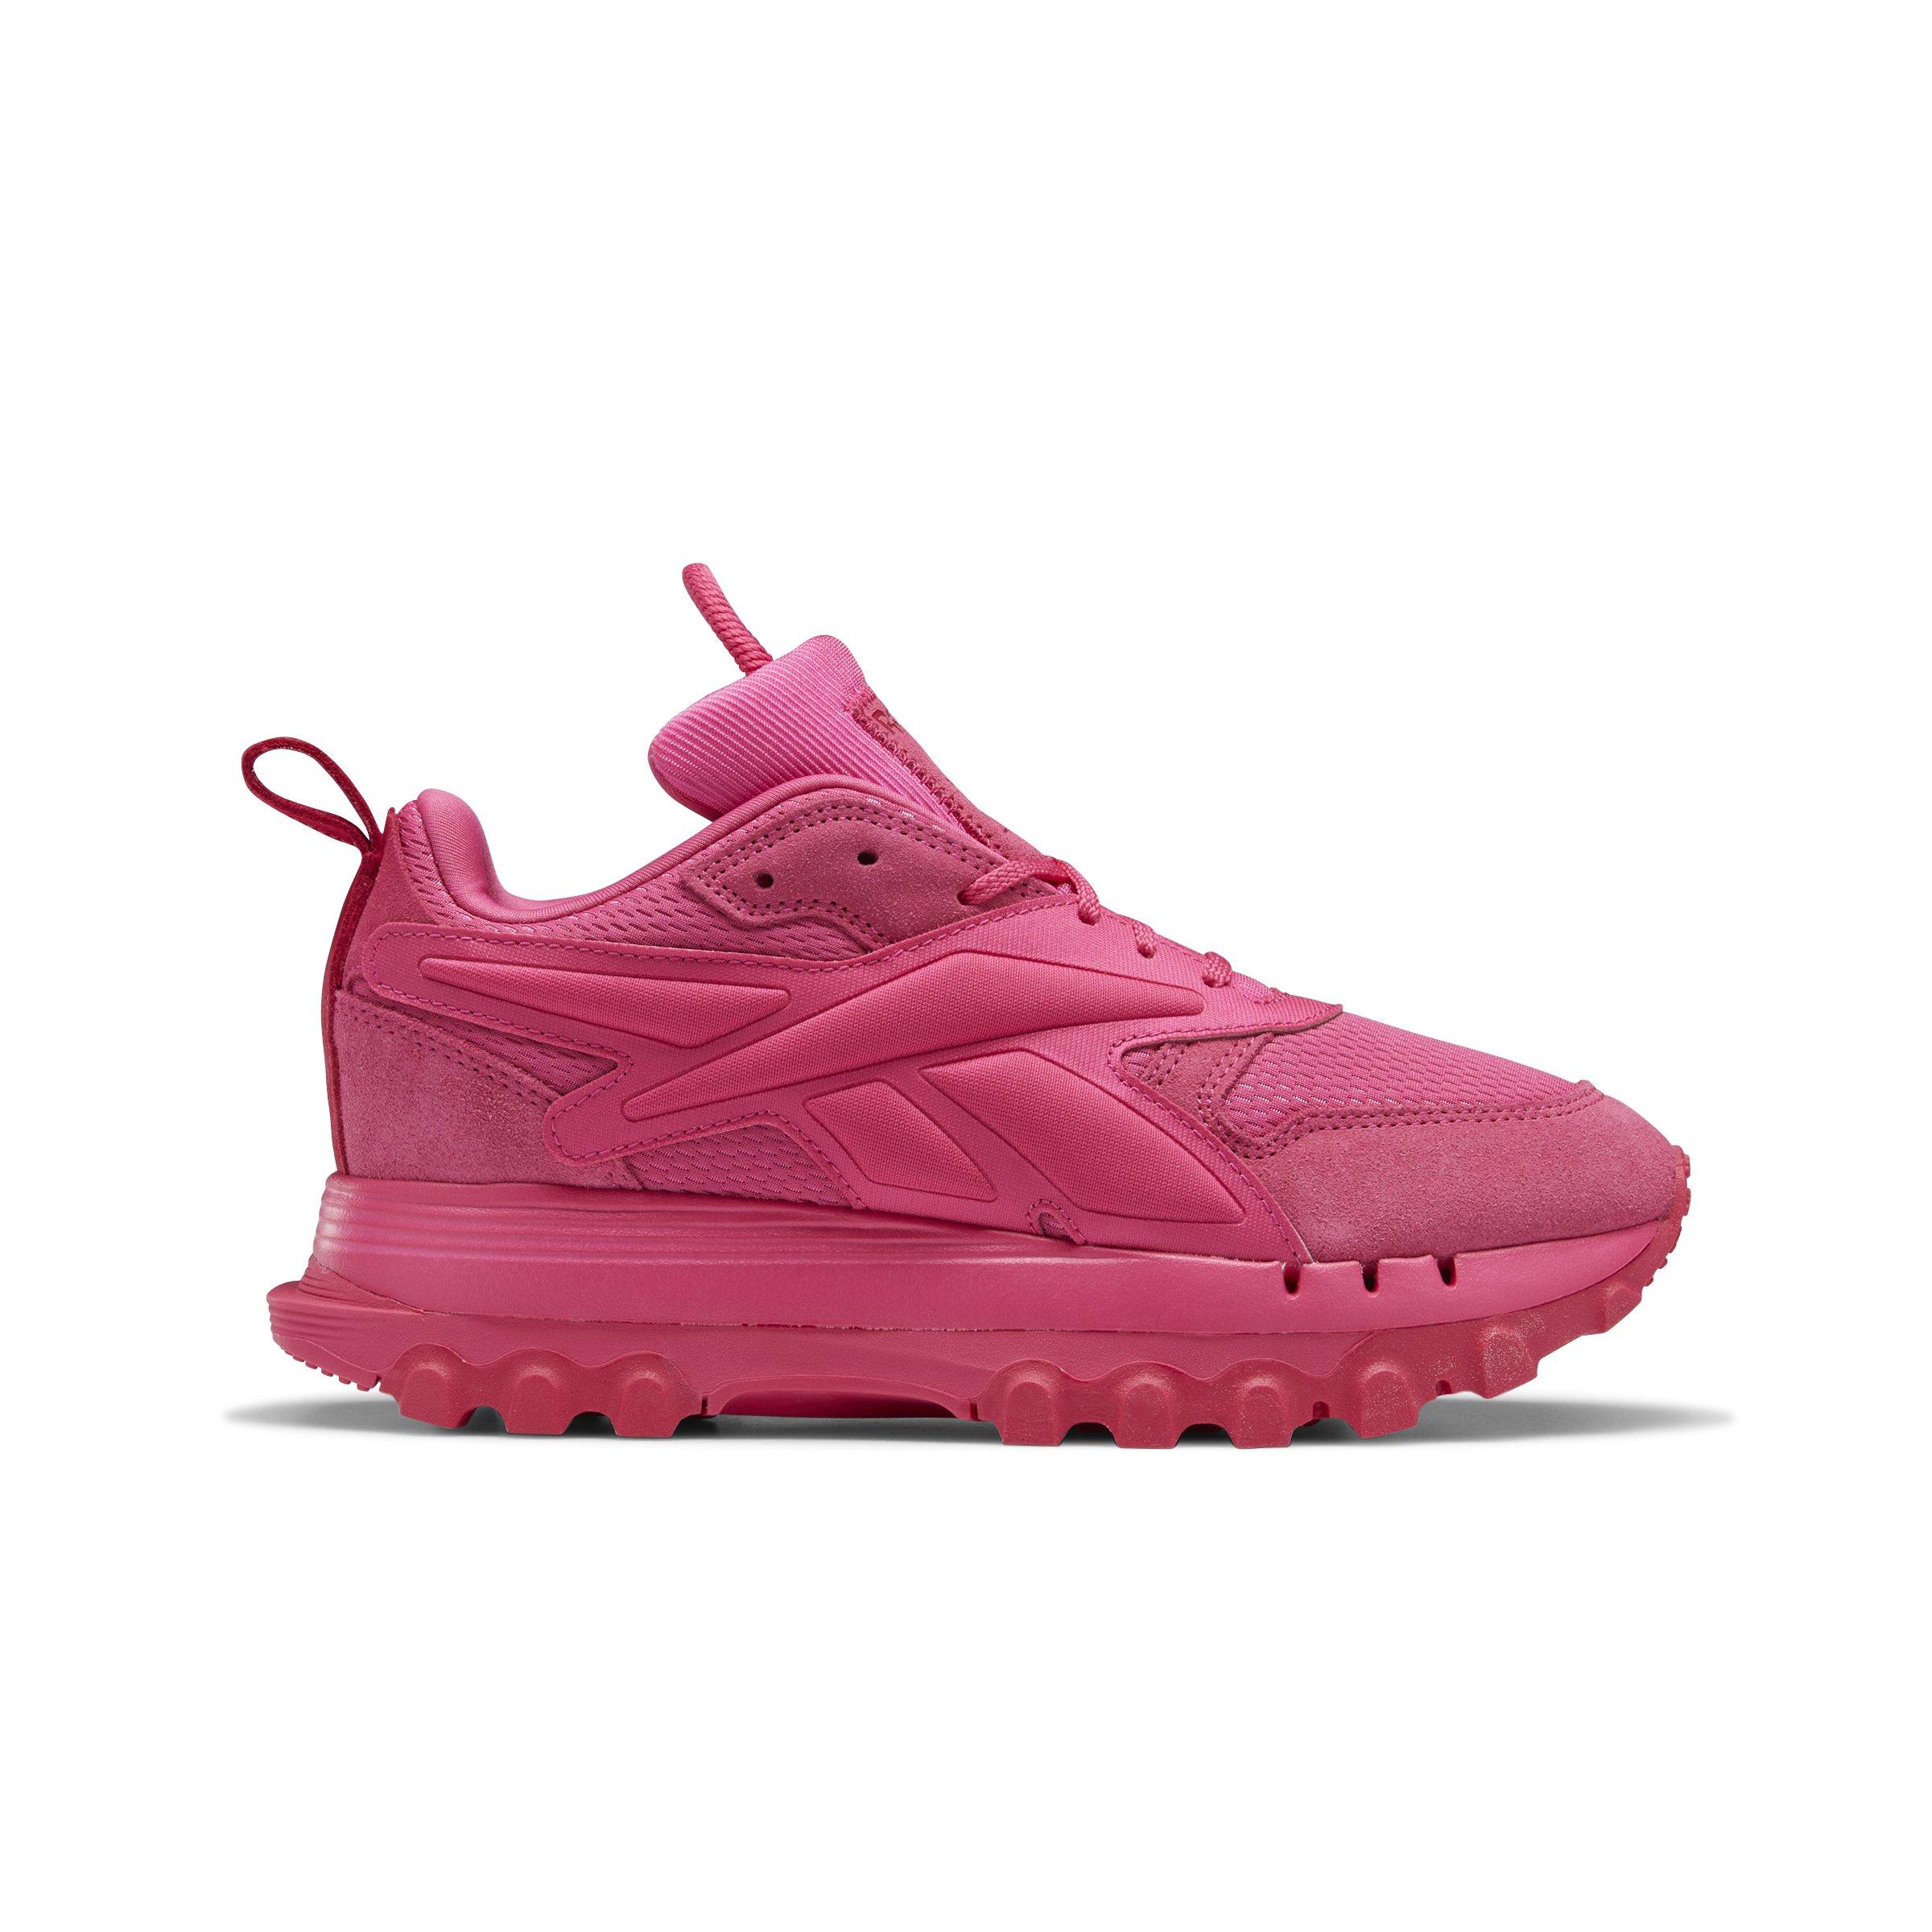 Reebok Cardi Classic V2 "Pink Fusion" Women's Shoe